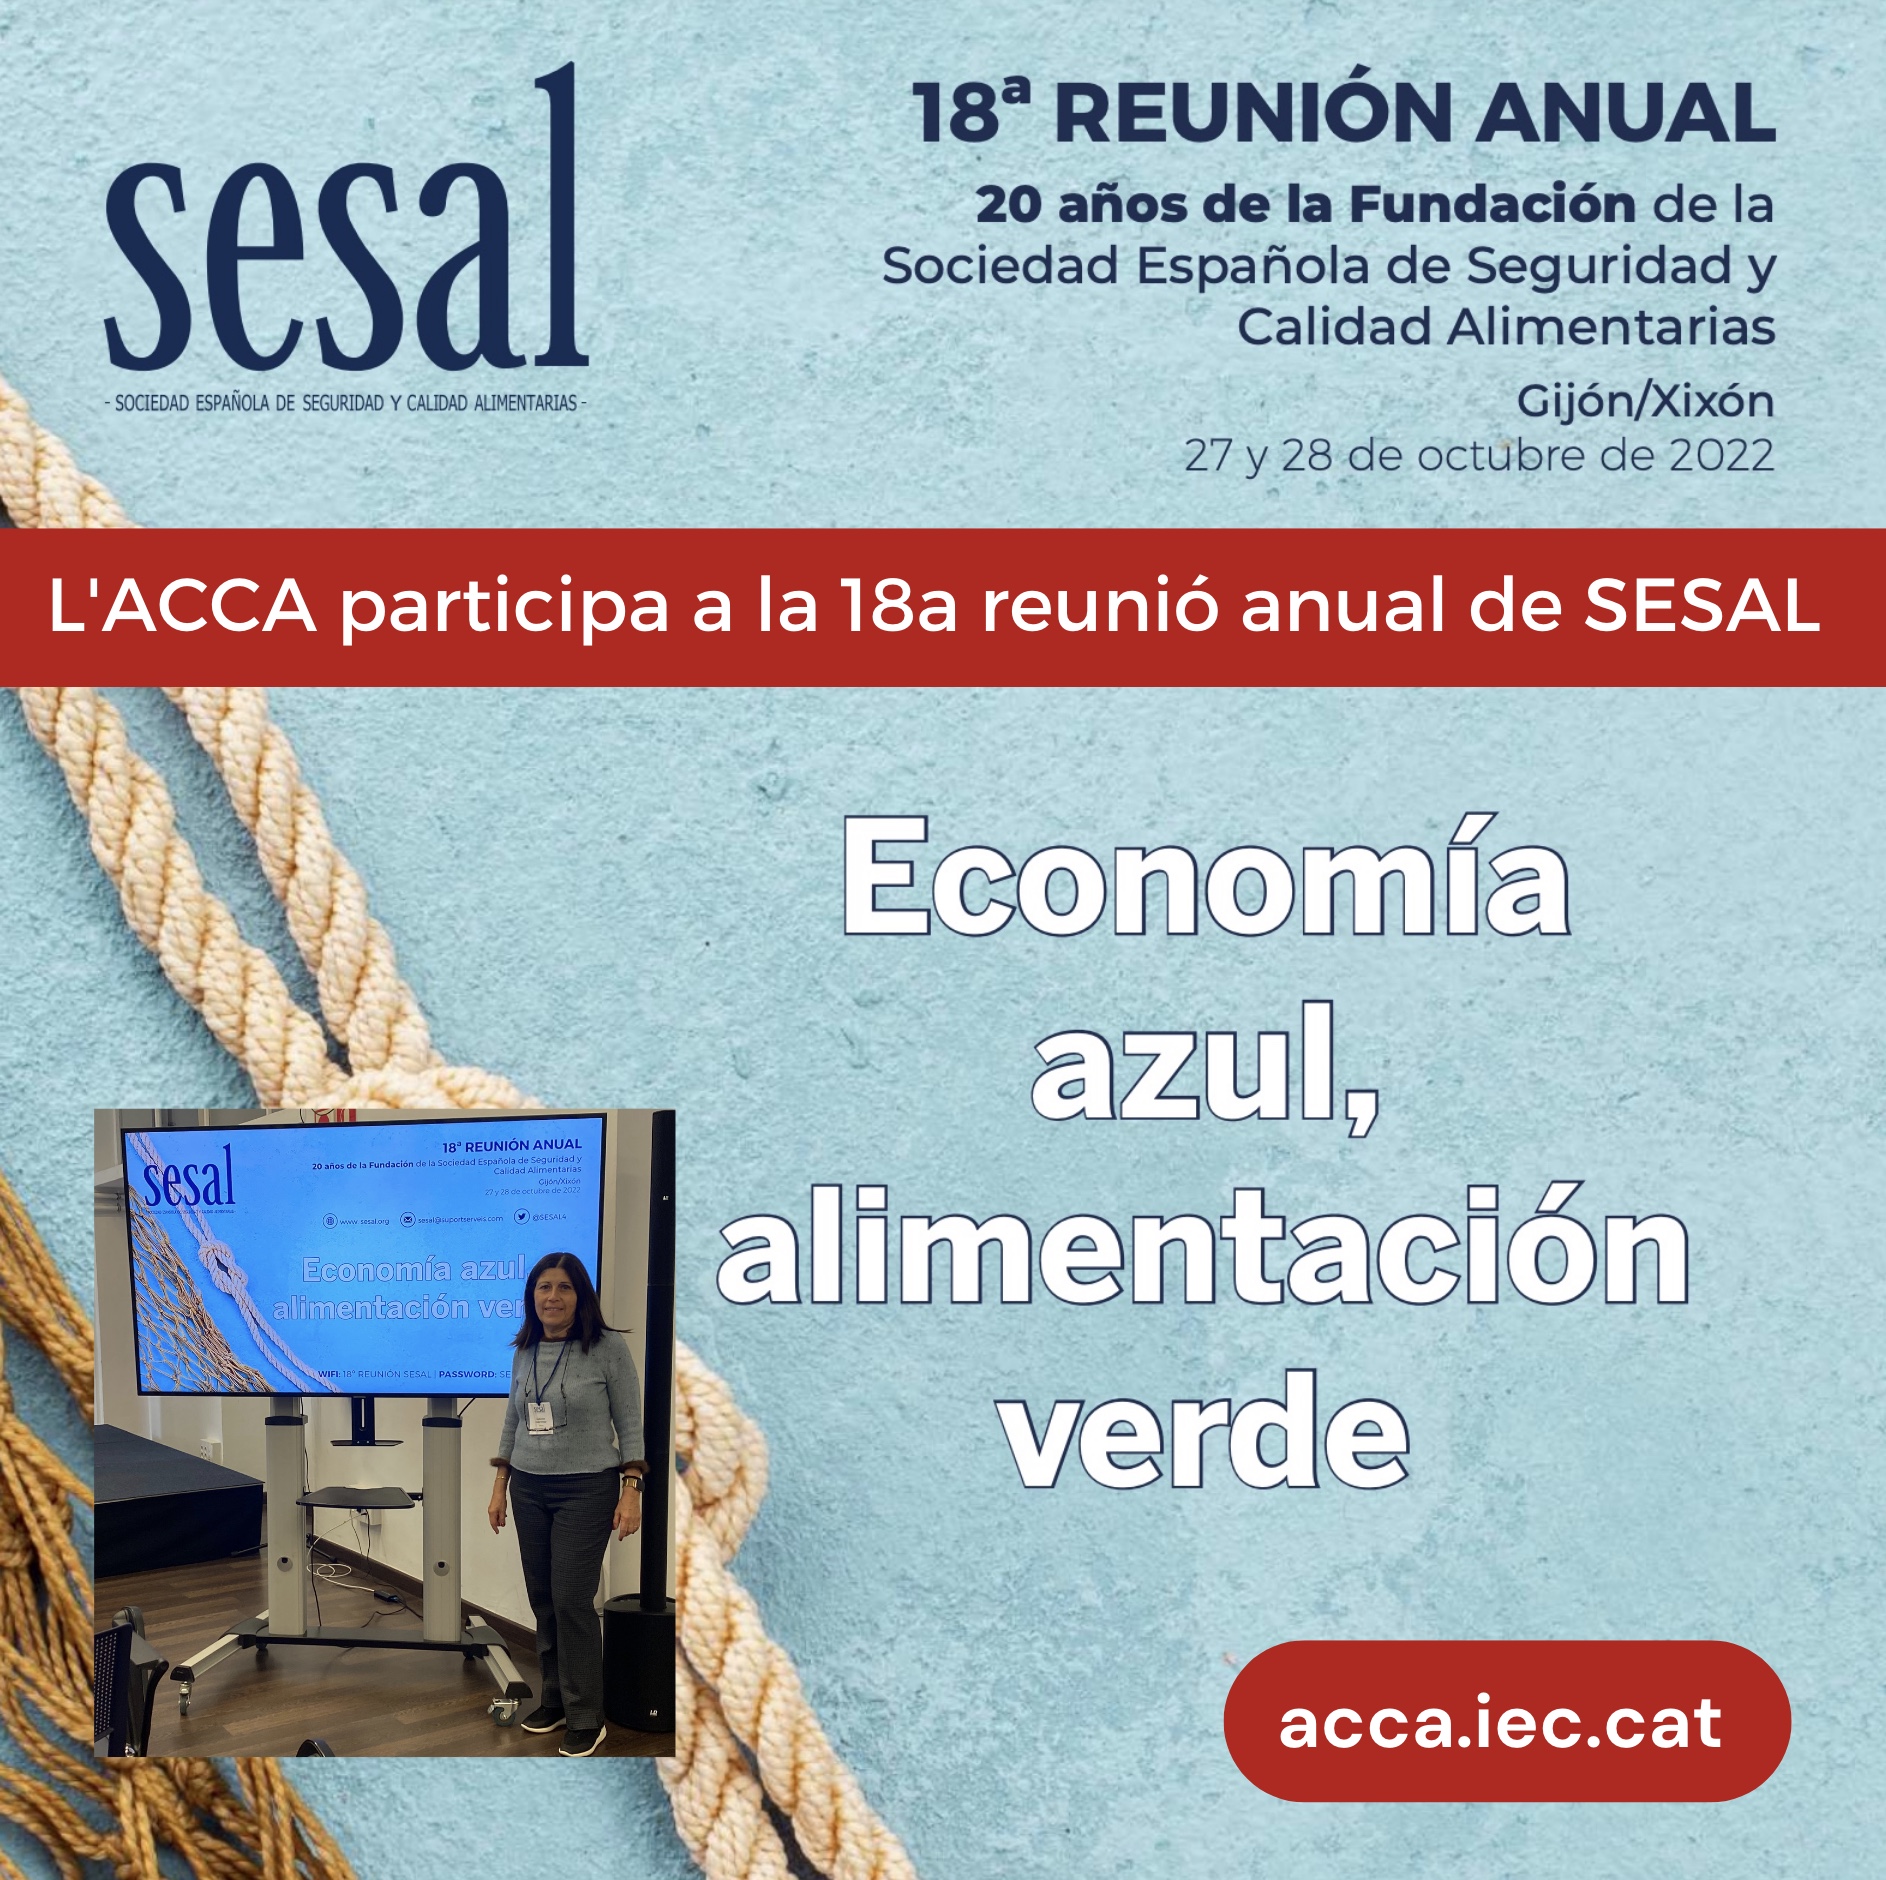 L’ACCA participa a la 18a reunió anual de la Sociedad Española de Seguridad y Calidad Alimentarias (SESAL)